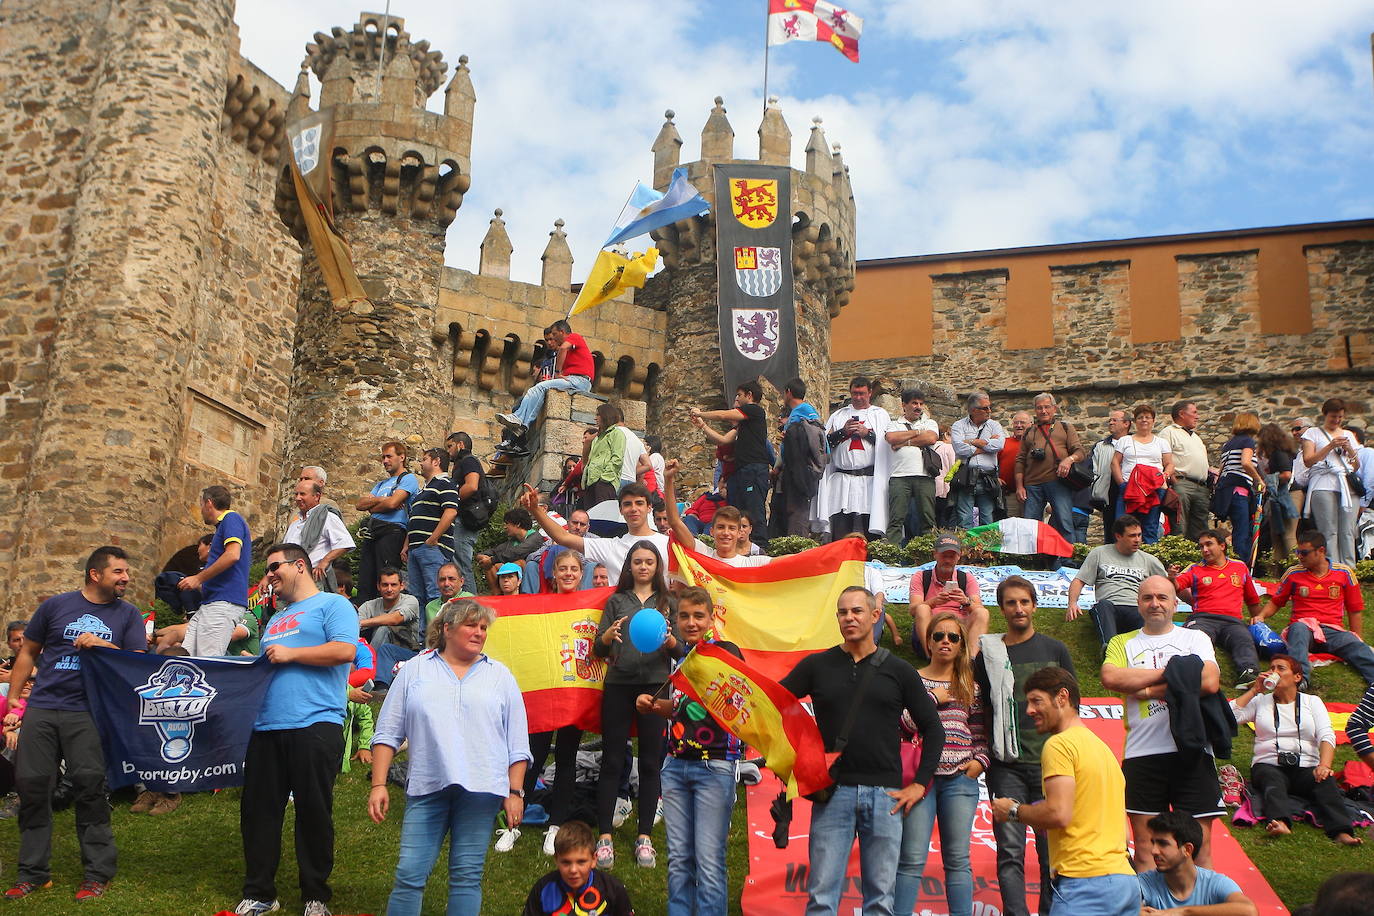 Corredores y espectadores durante el mundial de ciclismo de Ponferrada frente al Castillo de los Templarios